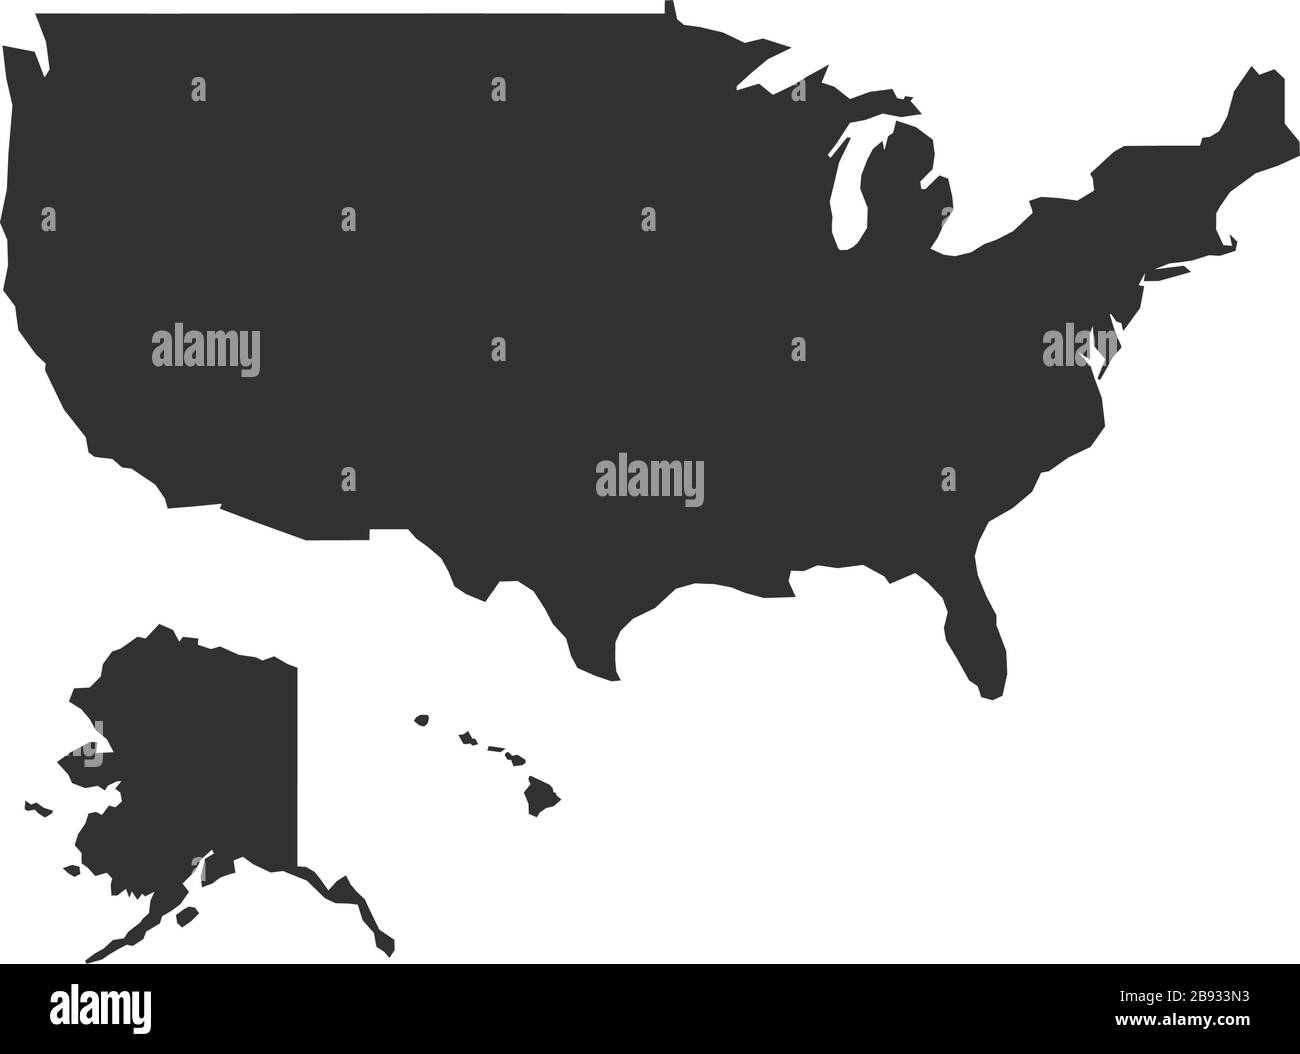 Carte simple des états-unis. Illustration vectorielle de stock isolée sur fond blanc. Illustration de Vecteur